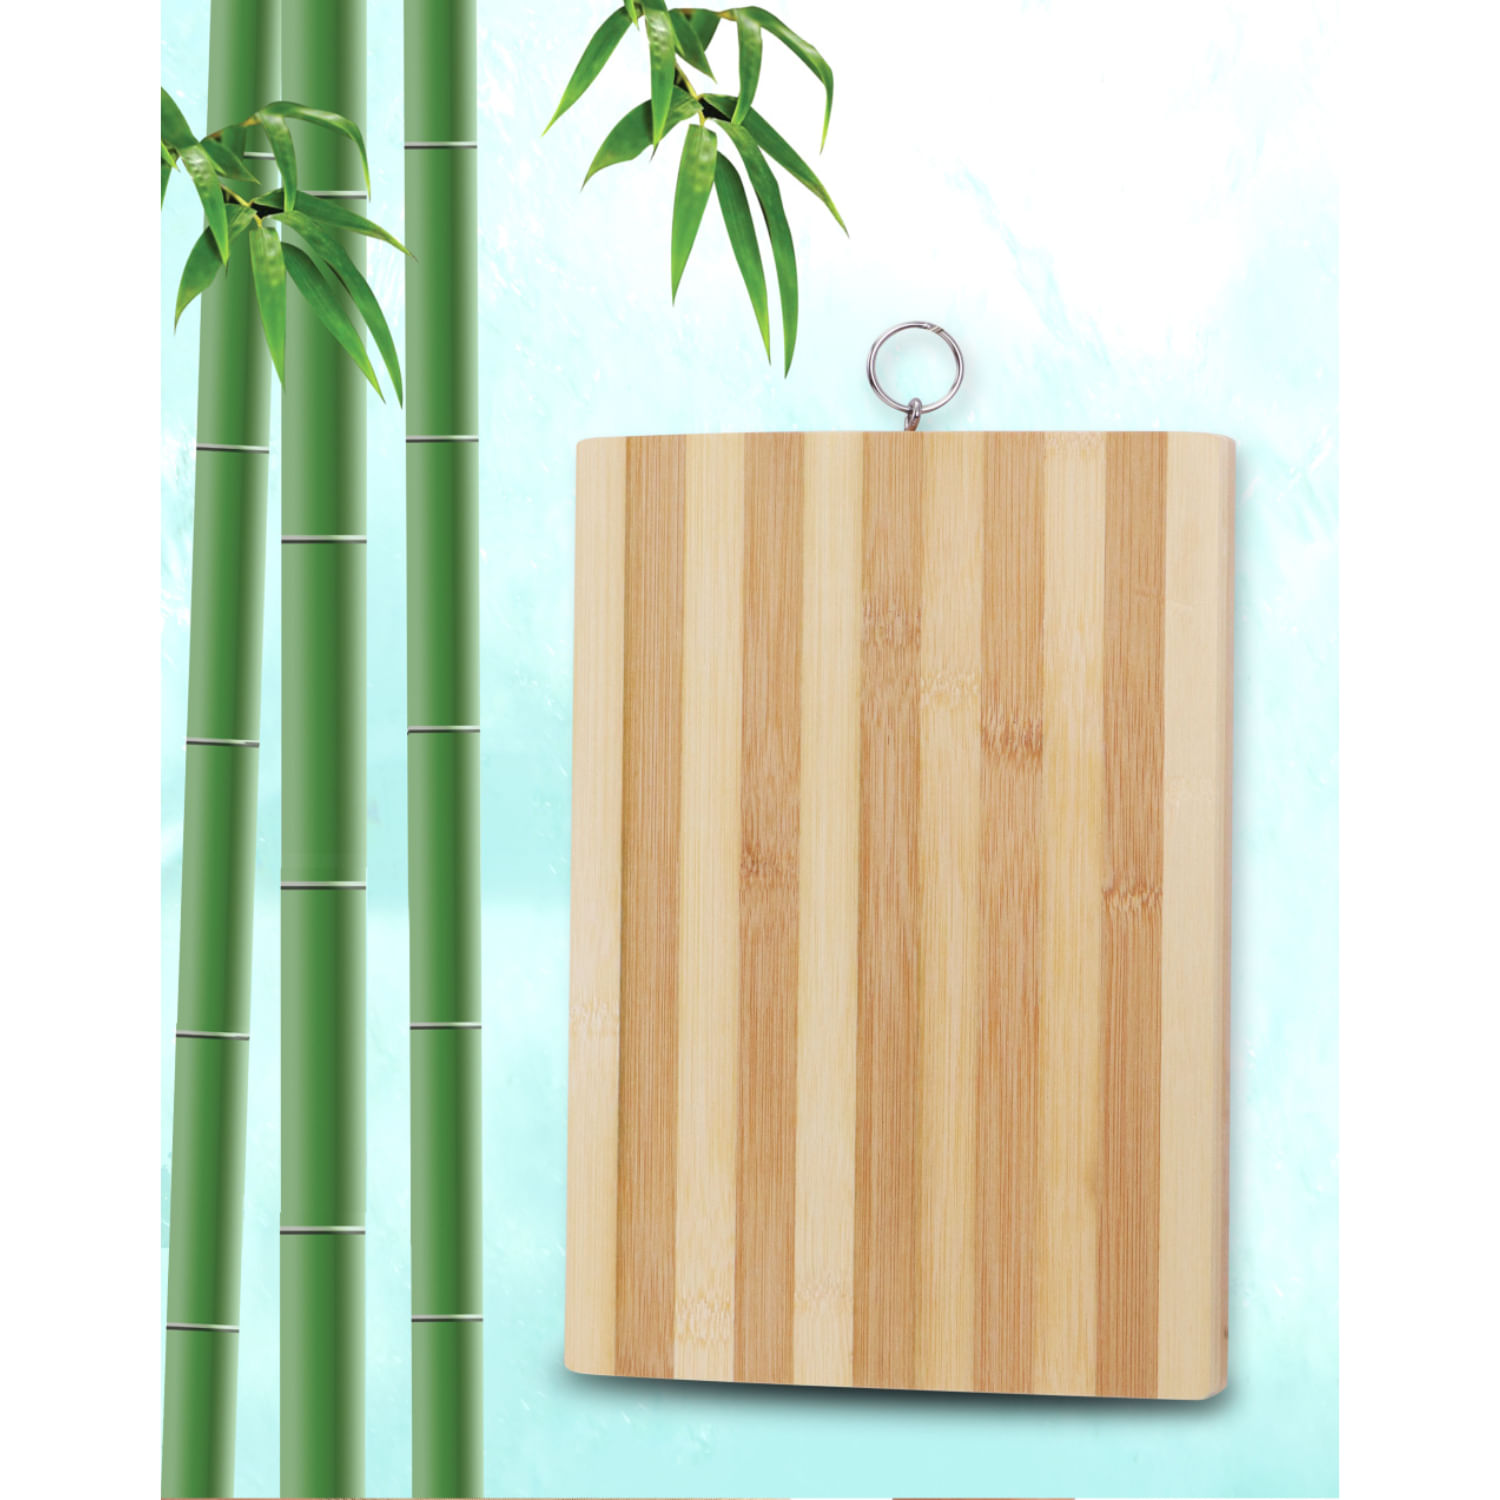 Tabla de picar de bamboo - del Bazar - Bazar Online & Deco